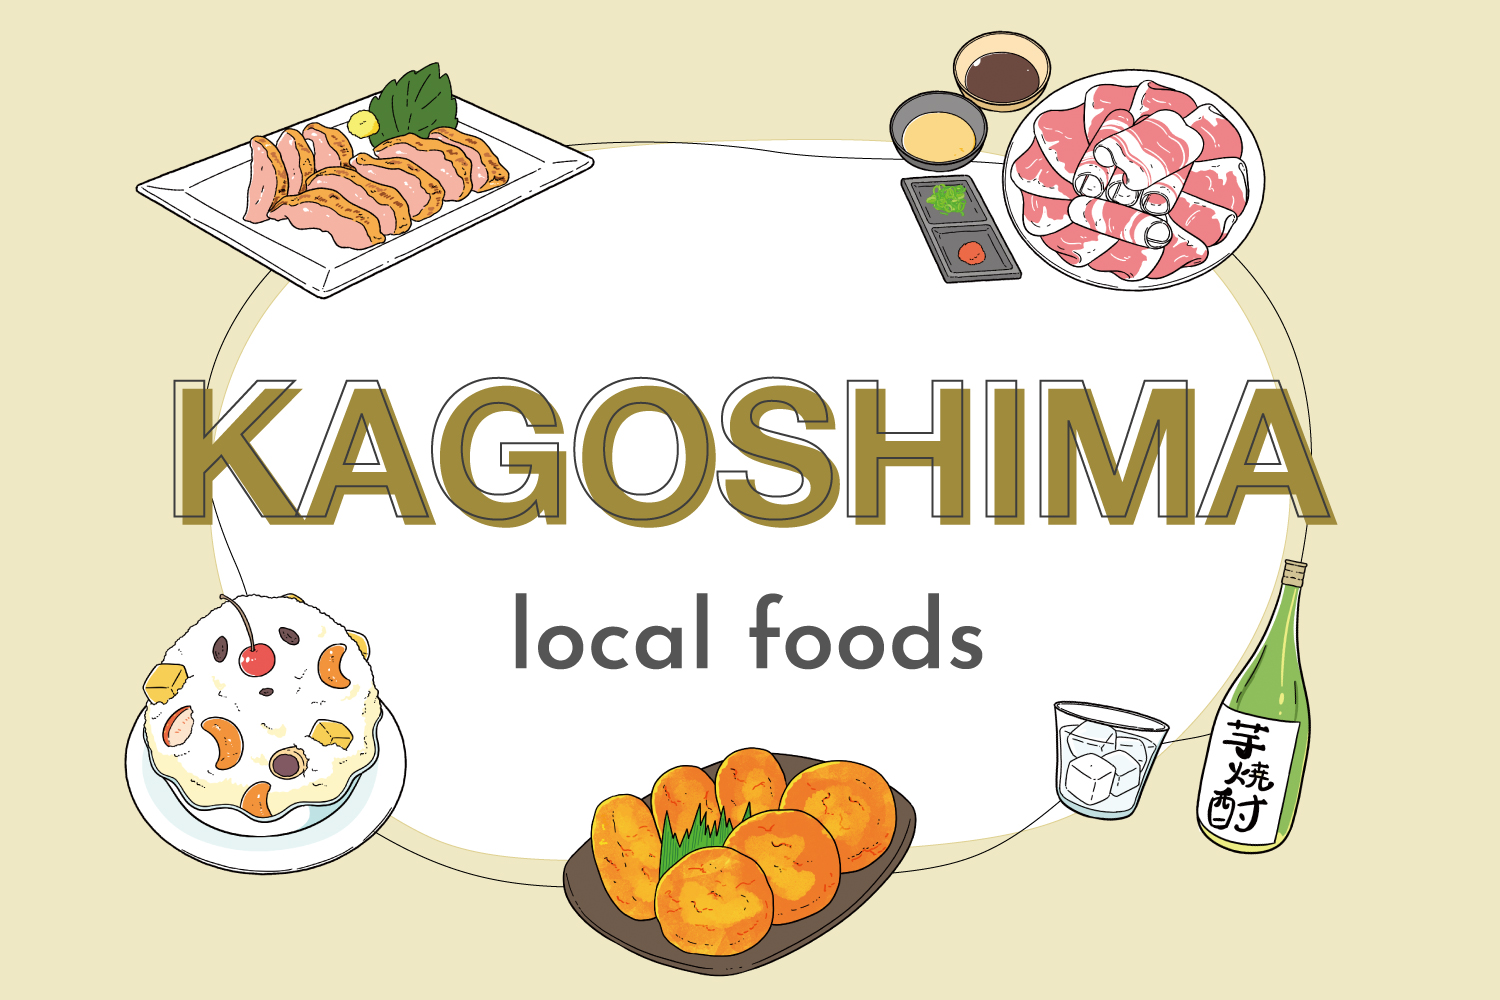 5 Local foods in Kagoshima｜Torisashi, Satsuma-age, Kagoahim Kurobuta, Shirokuma, and Satsuma Shochu